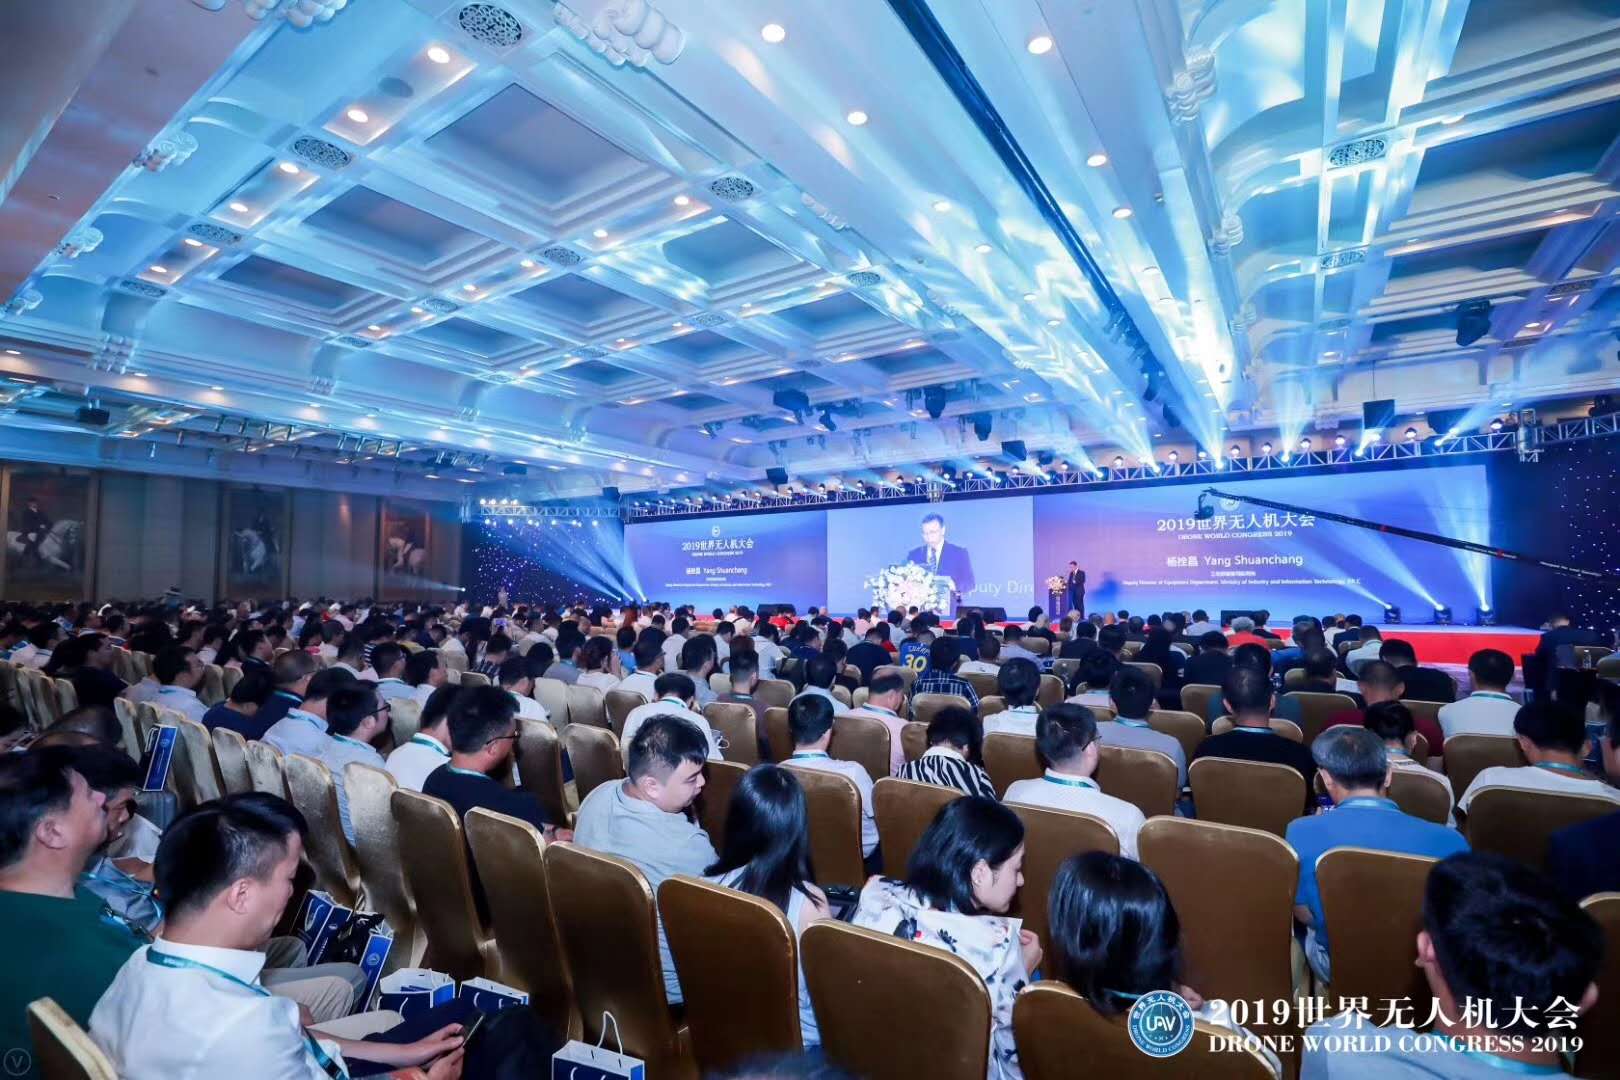 The 4th Shenzhen International UAV Exhibition